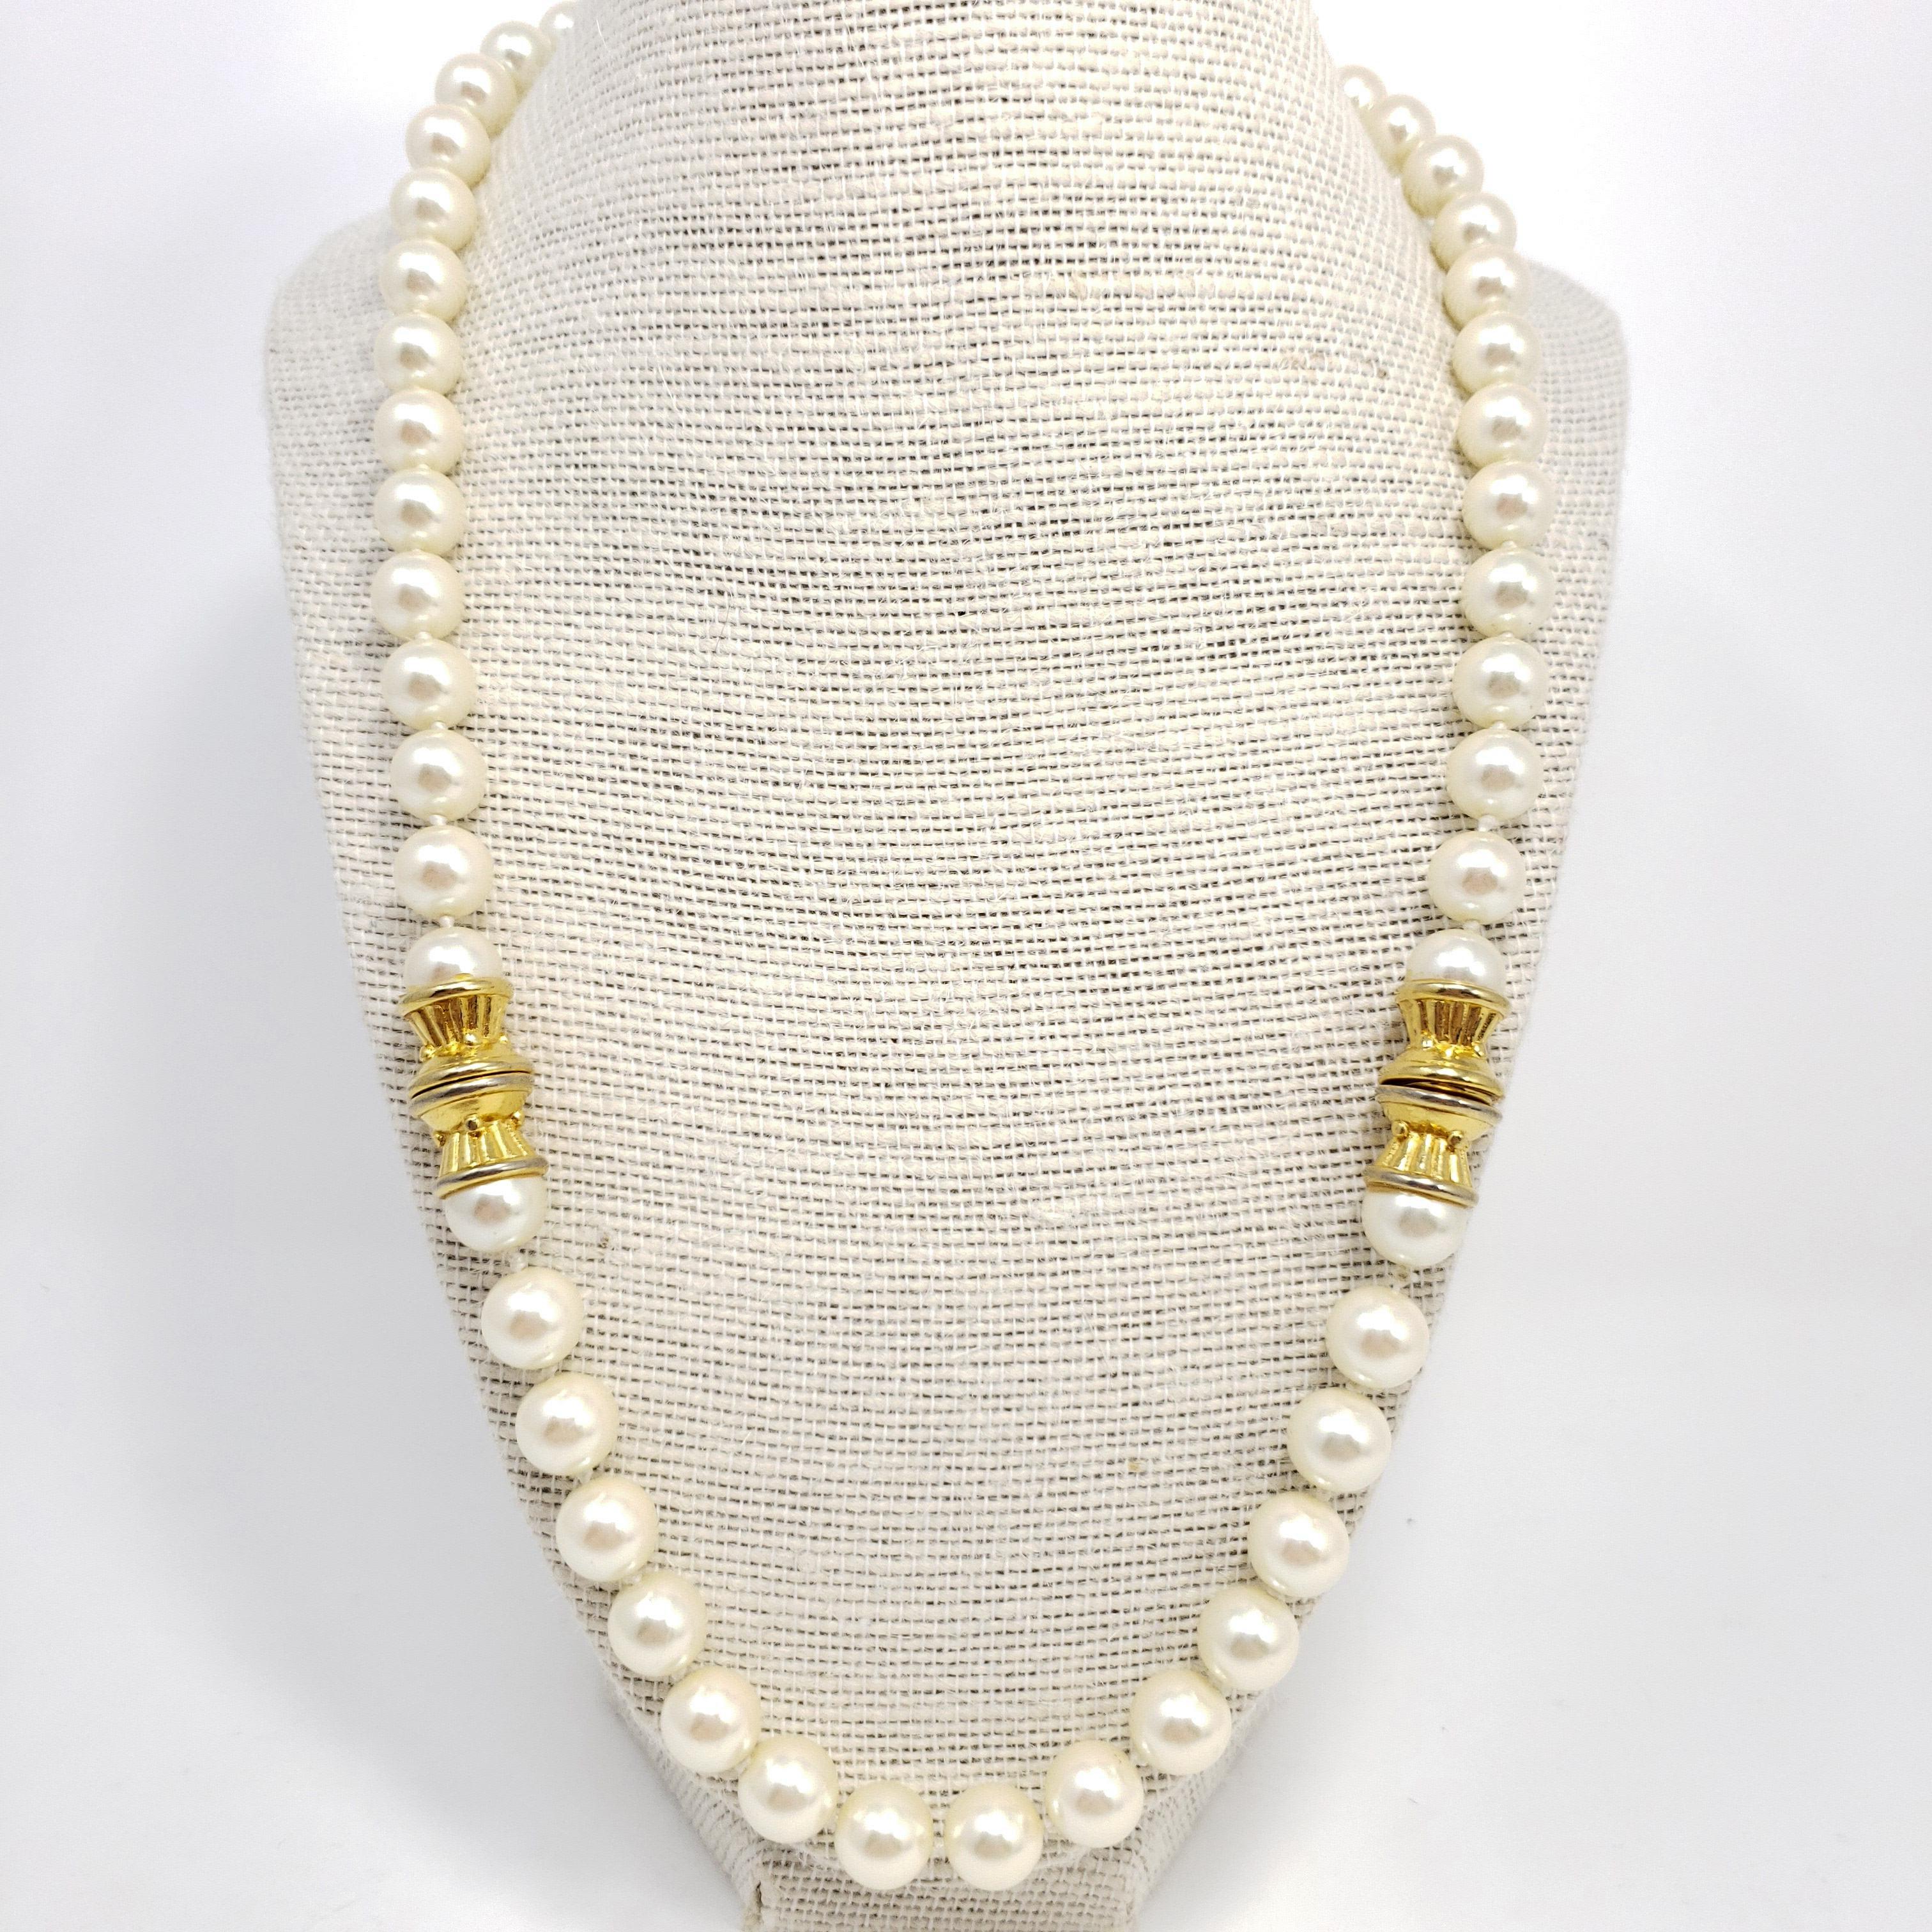 Vintage-Perlenkette mit einem einzelnen 22-Zoll-Strang aus weißen Kunstperlen, verziert mit zwei goldfarbenen Akzenten. Ein exquisites Accessoire!
